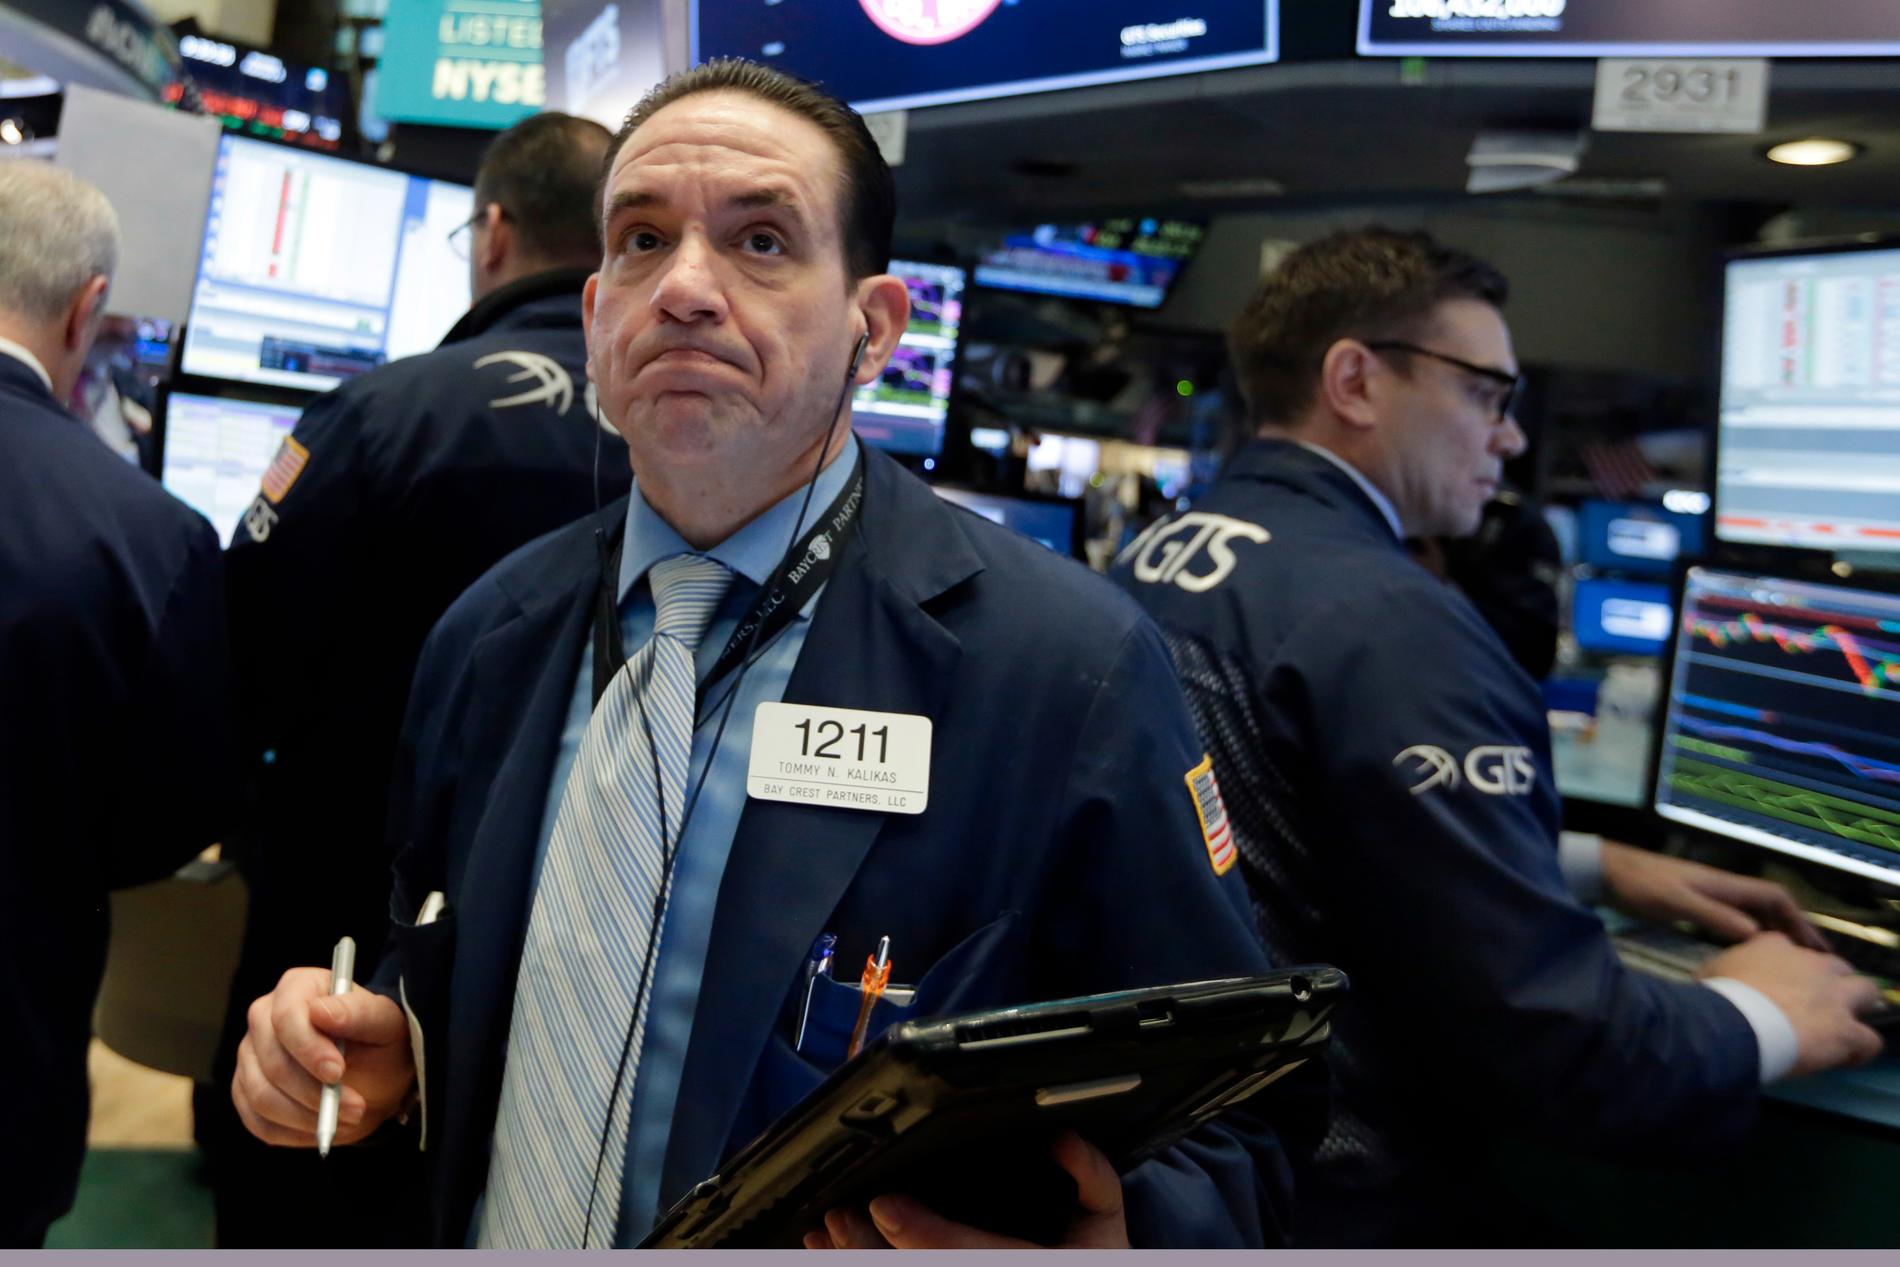 Verdien av aksjene notert på New York-børsene falt mandag kraftig. Foto: AP / NTB scanpix